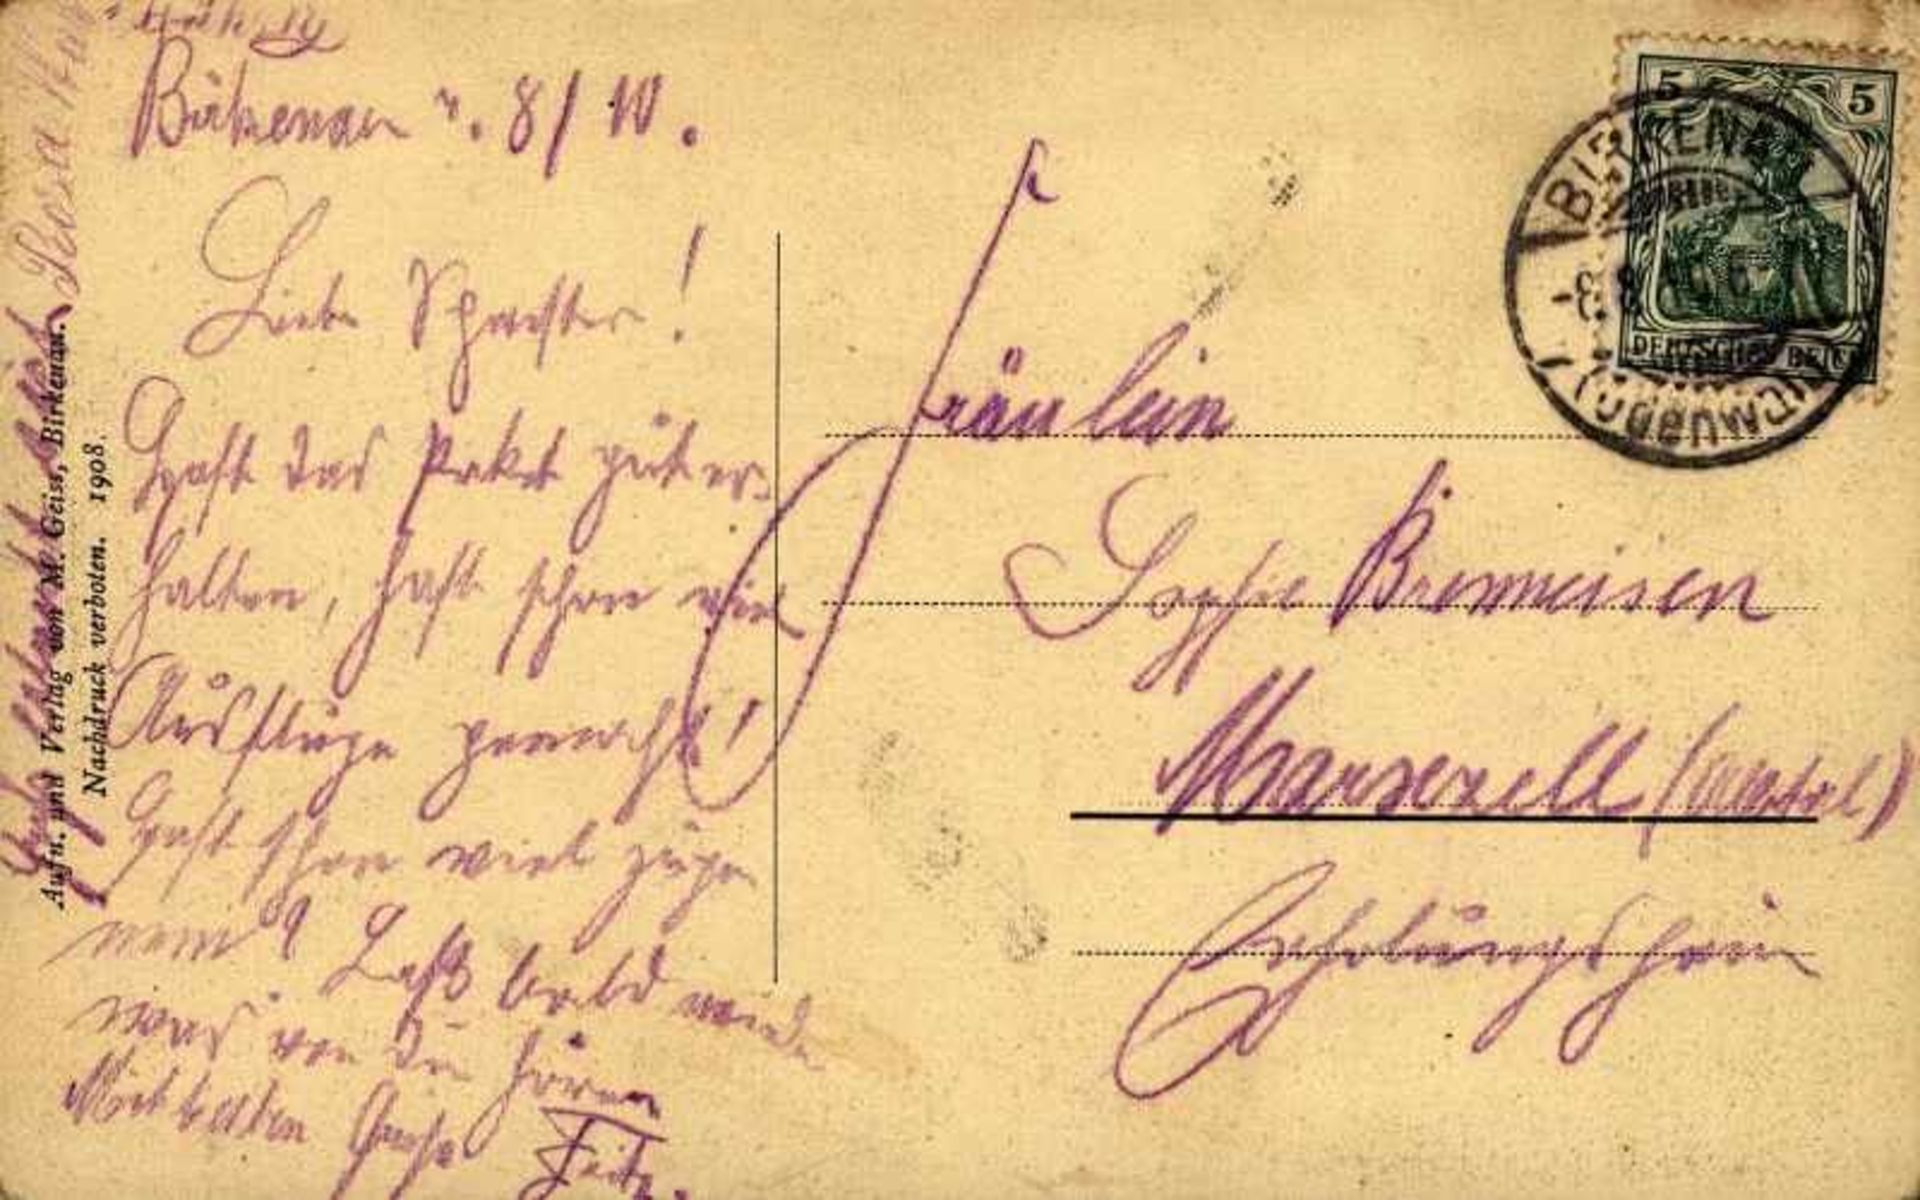 1 Postkarte, kleines Format, s/w, Birkenau i. O., mit Bm und Abgangsstempel 1910, unfrisch, - Bild 2 aus 2